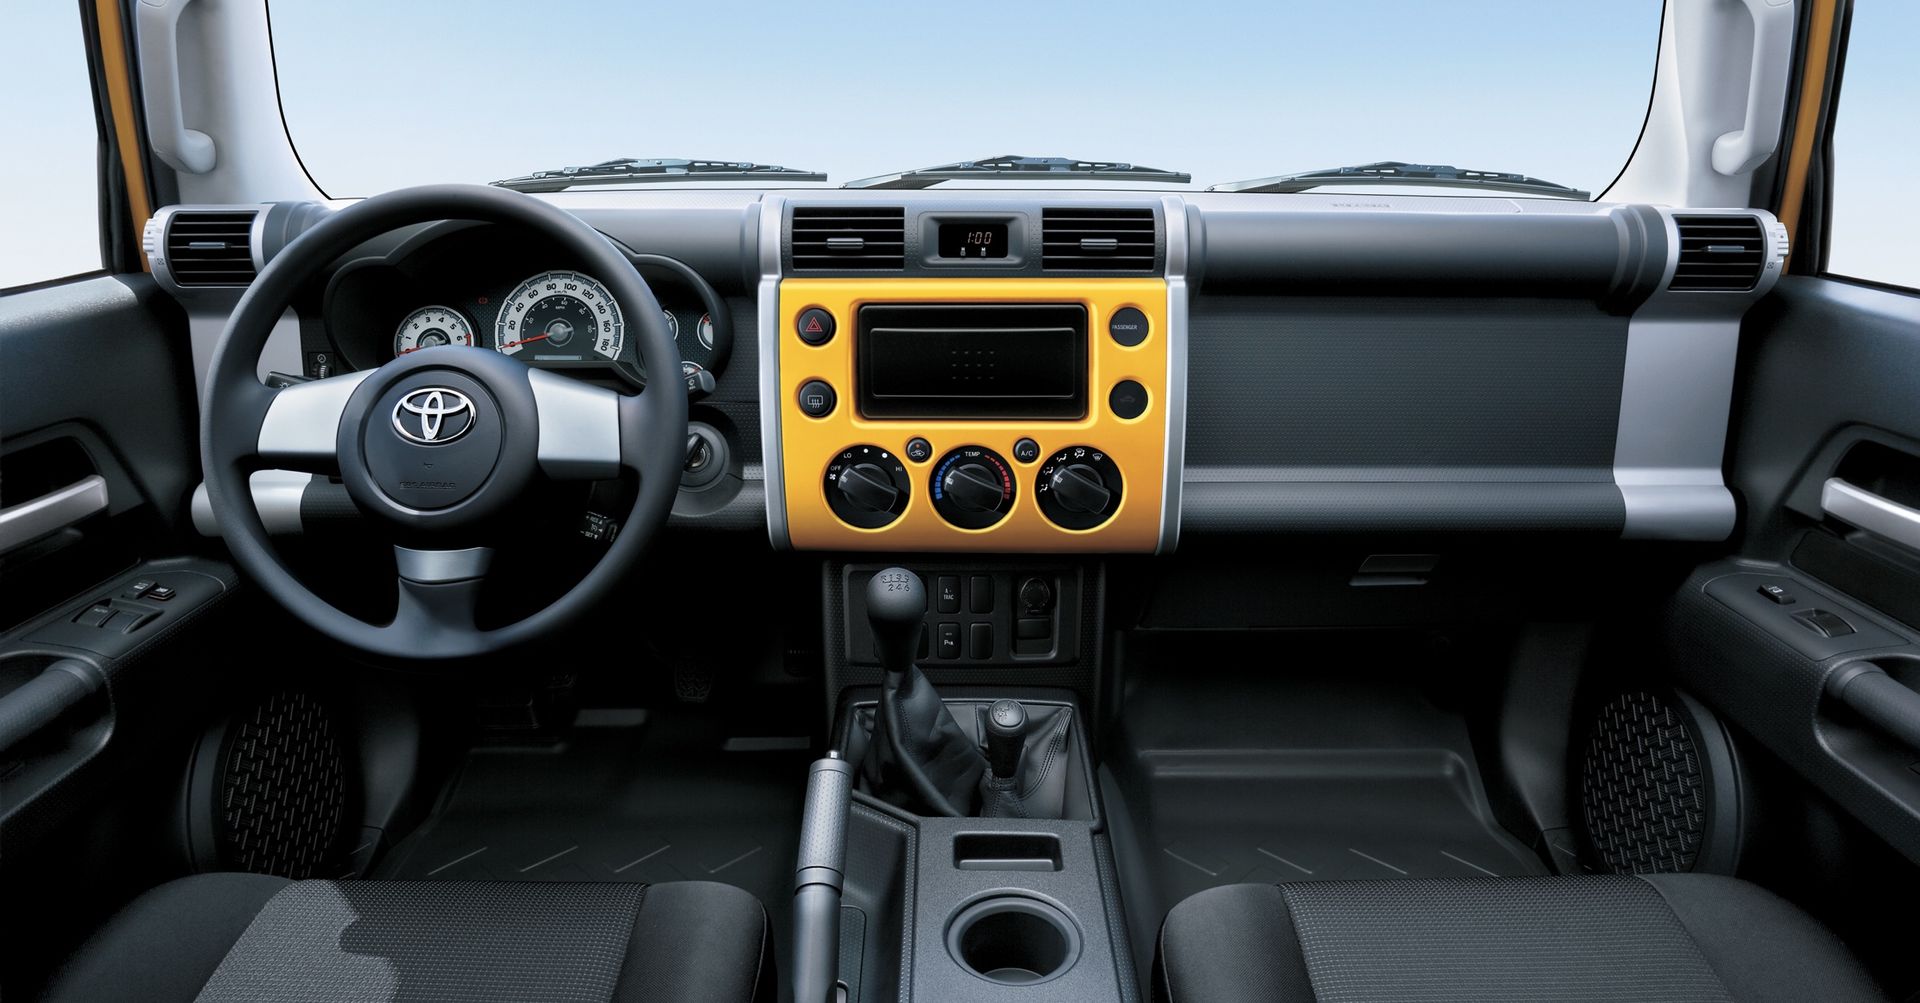 Toyota FJ Cruiser 2022 interior dashboard